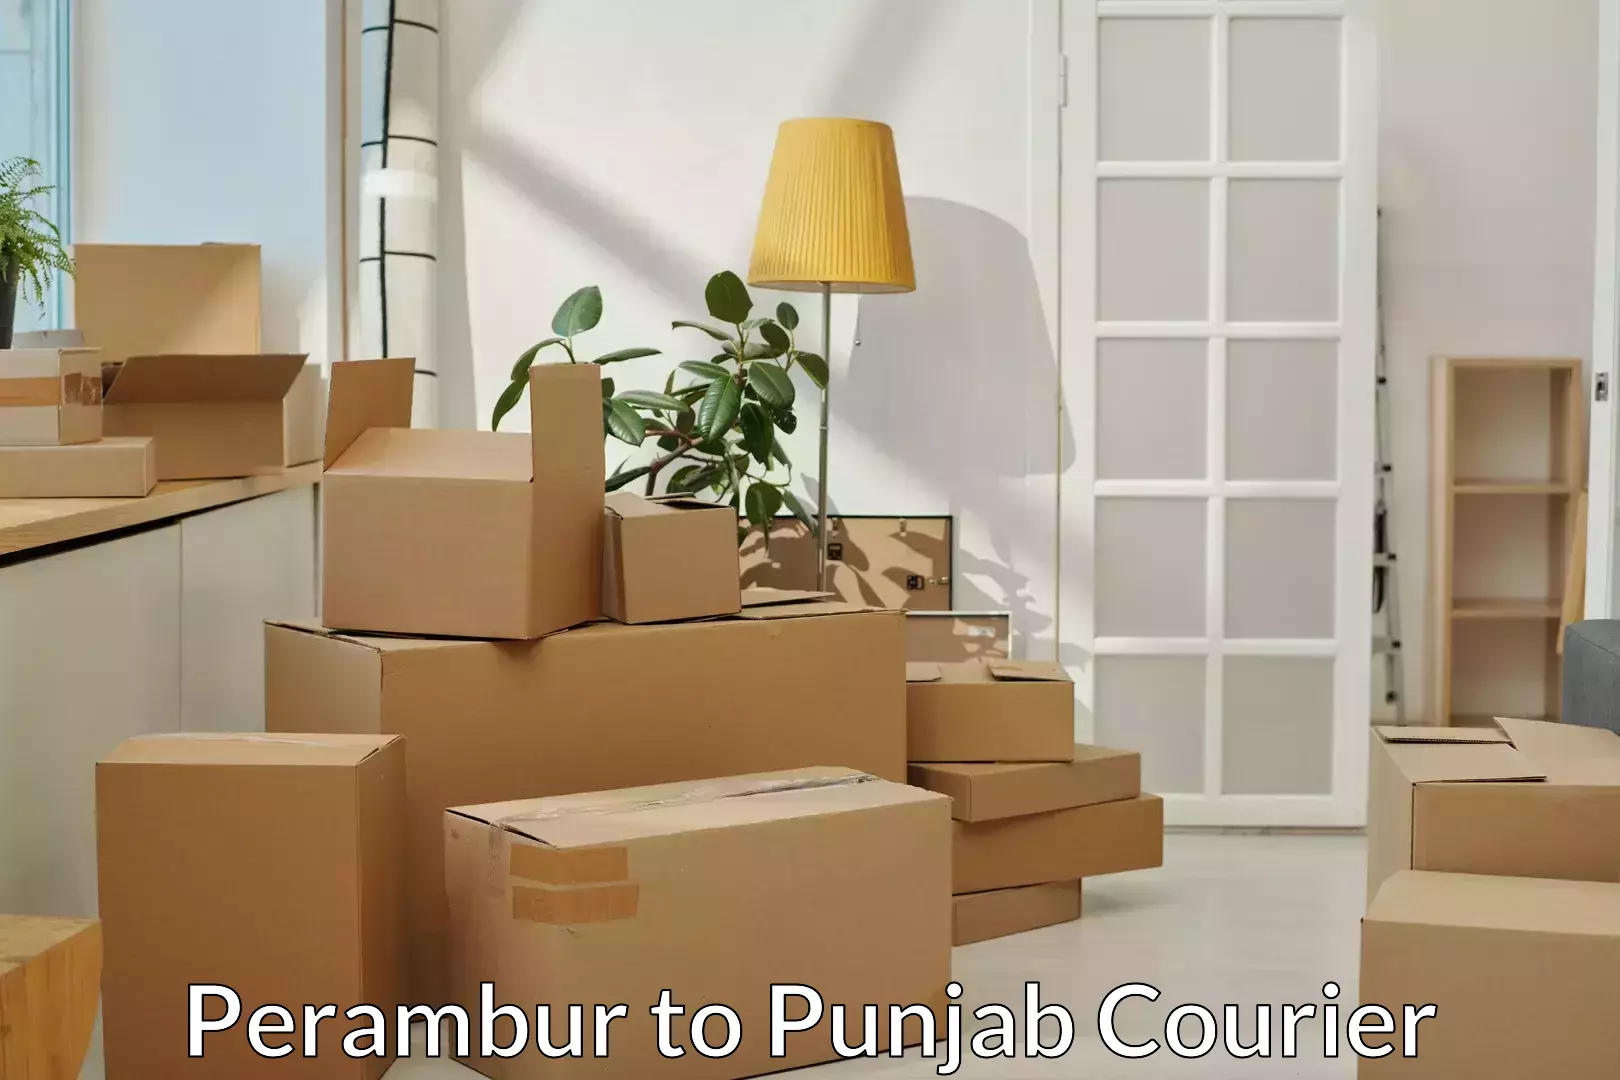 Furniture relocation experts Perambur to Kotkapura